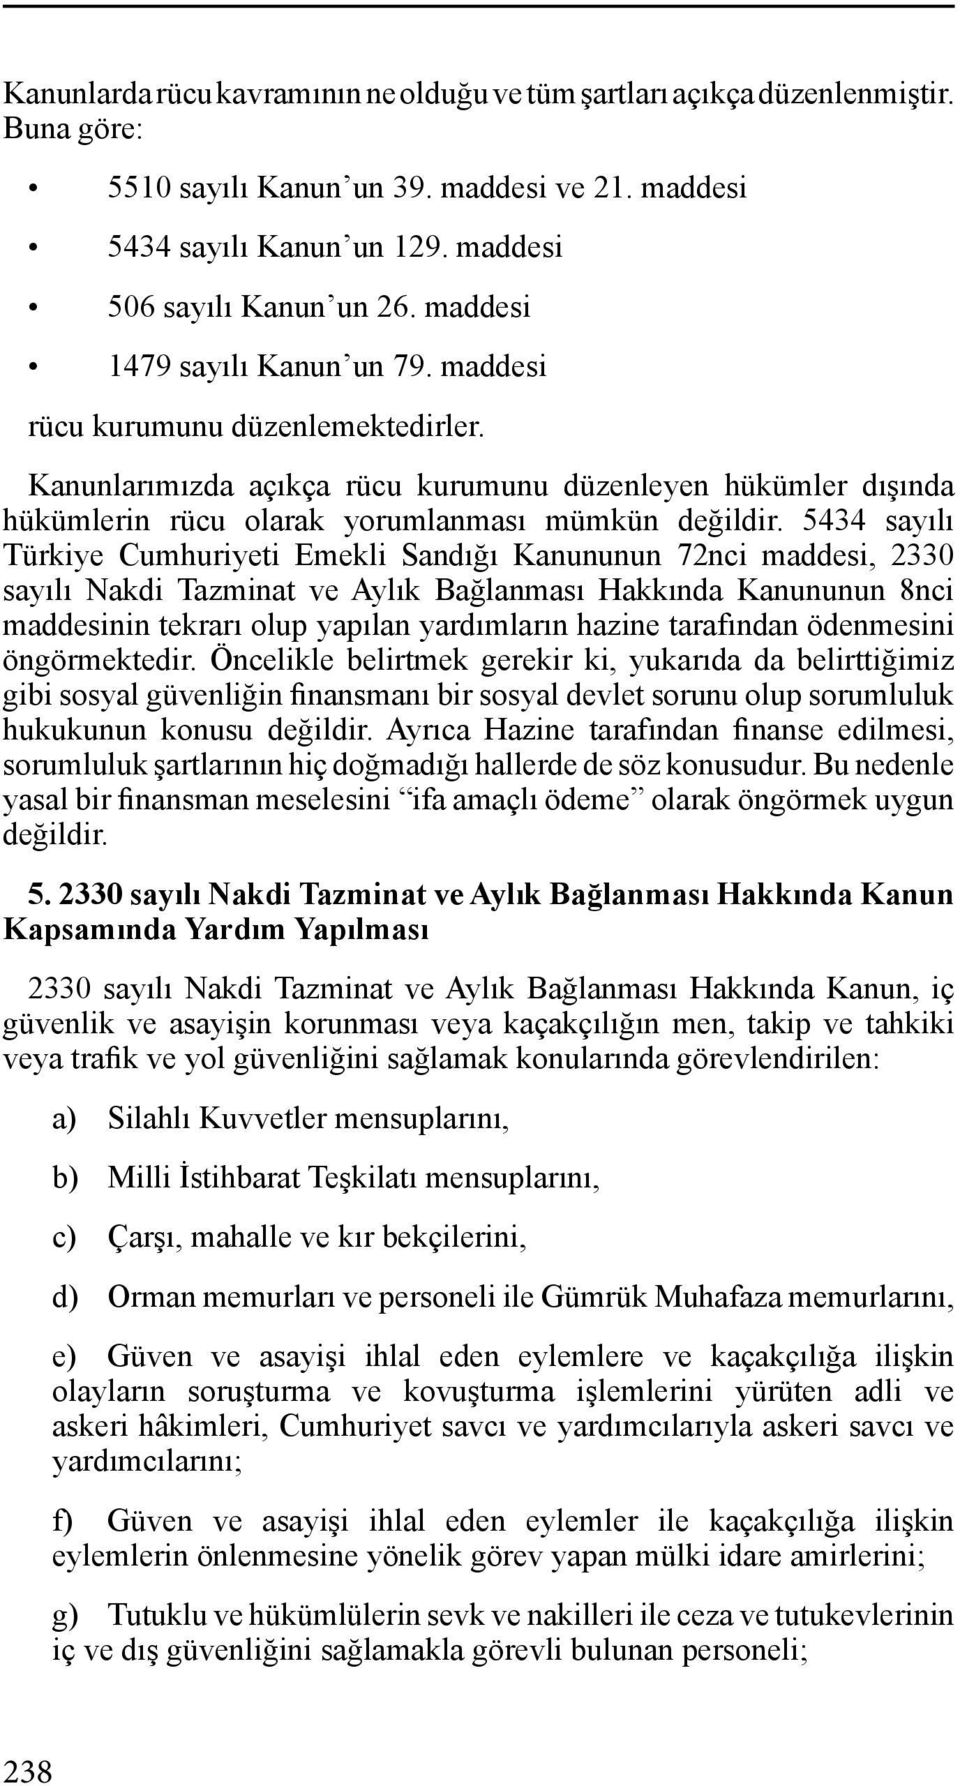 5434 sayılı Türkiye Cumhuriyeti Emekli Sandığı Kanununun 72nci maddesi, 2330 sayılı Nakdi Tazminat ve Aylık Bağlanması Hakkında Kanununun 8nci maddesinin tekrarı olup yapılan yardımların hazine